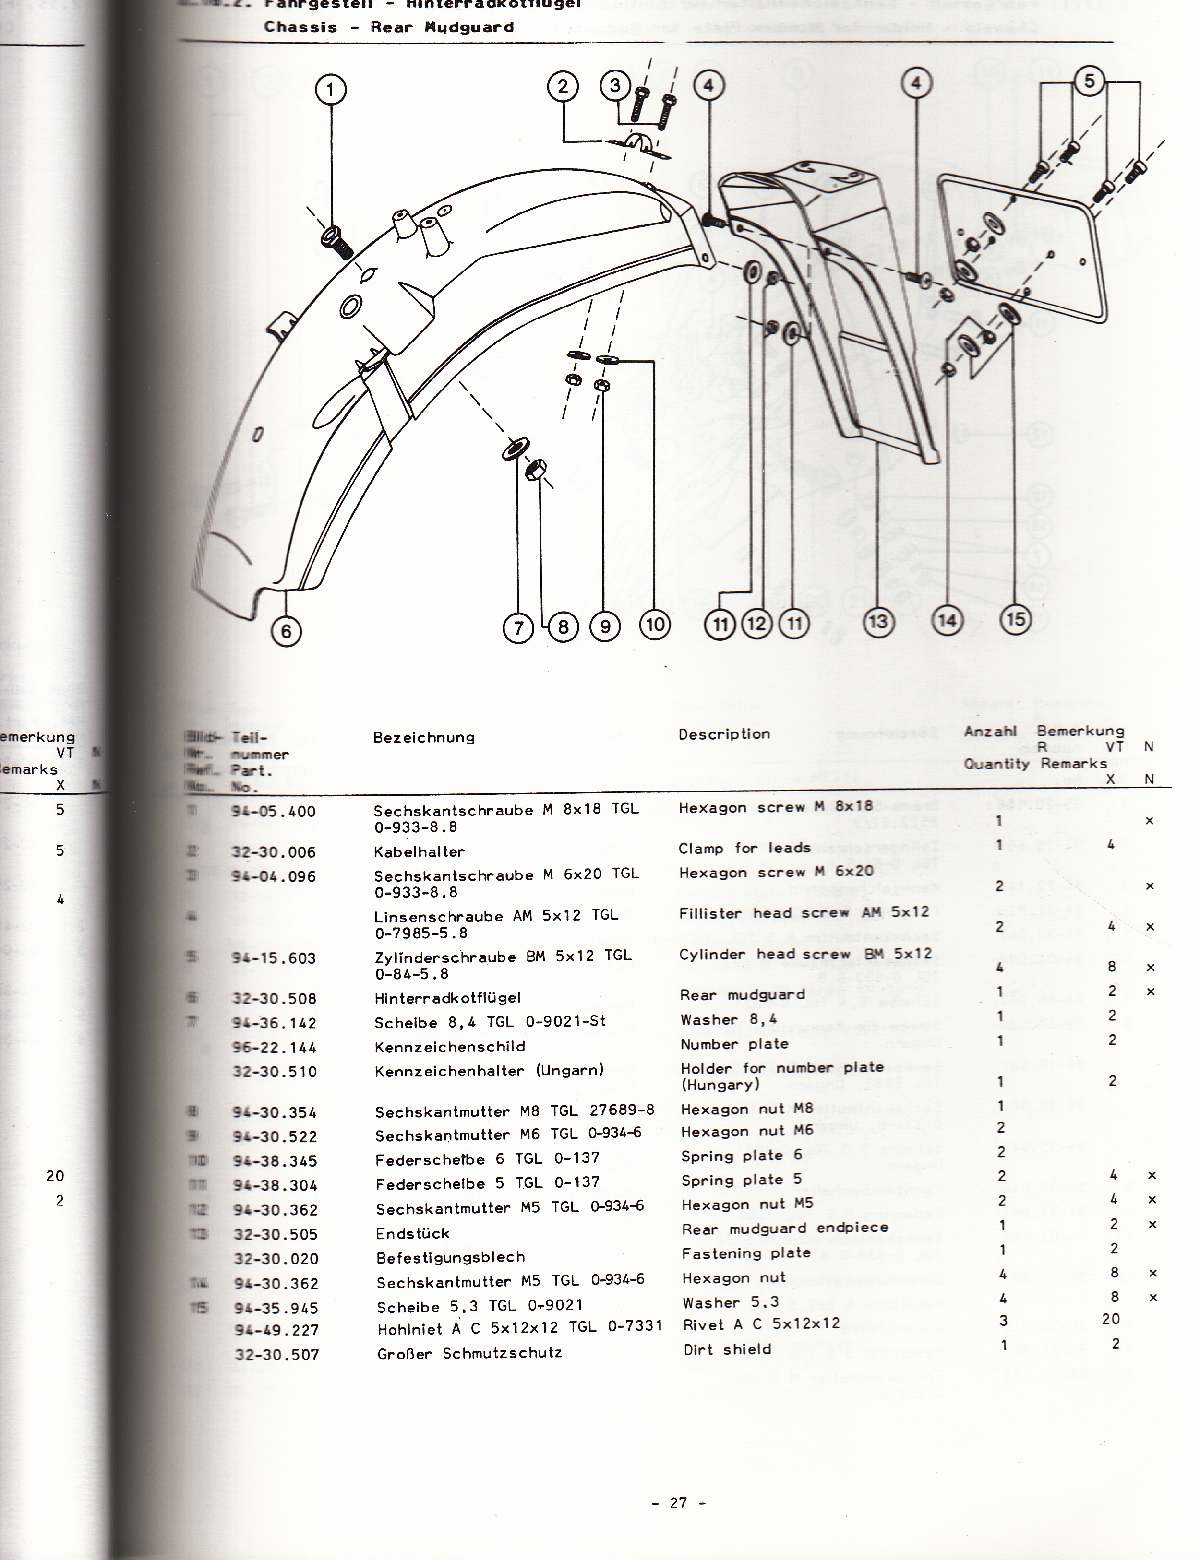 Katalog MZ 251 ETZ - 2.16.2. Fahrgestell - Hinterradkotflügel